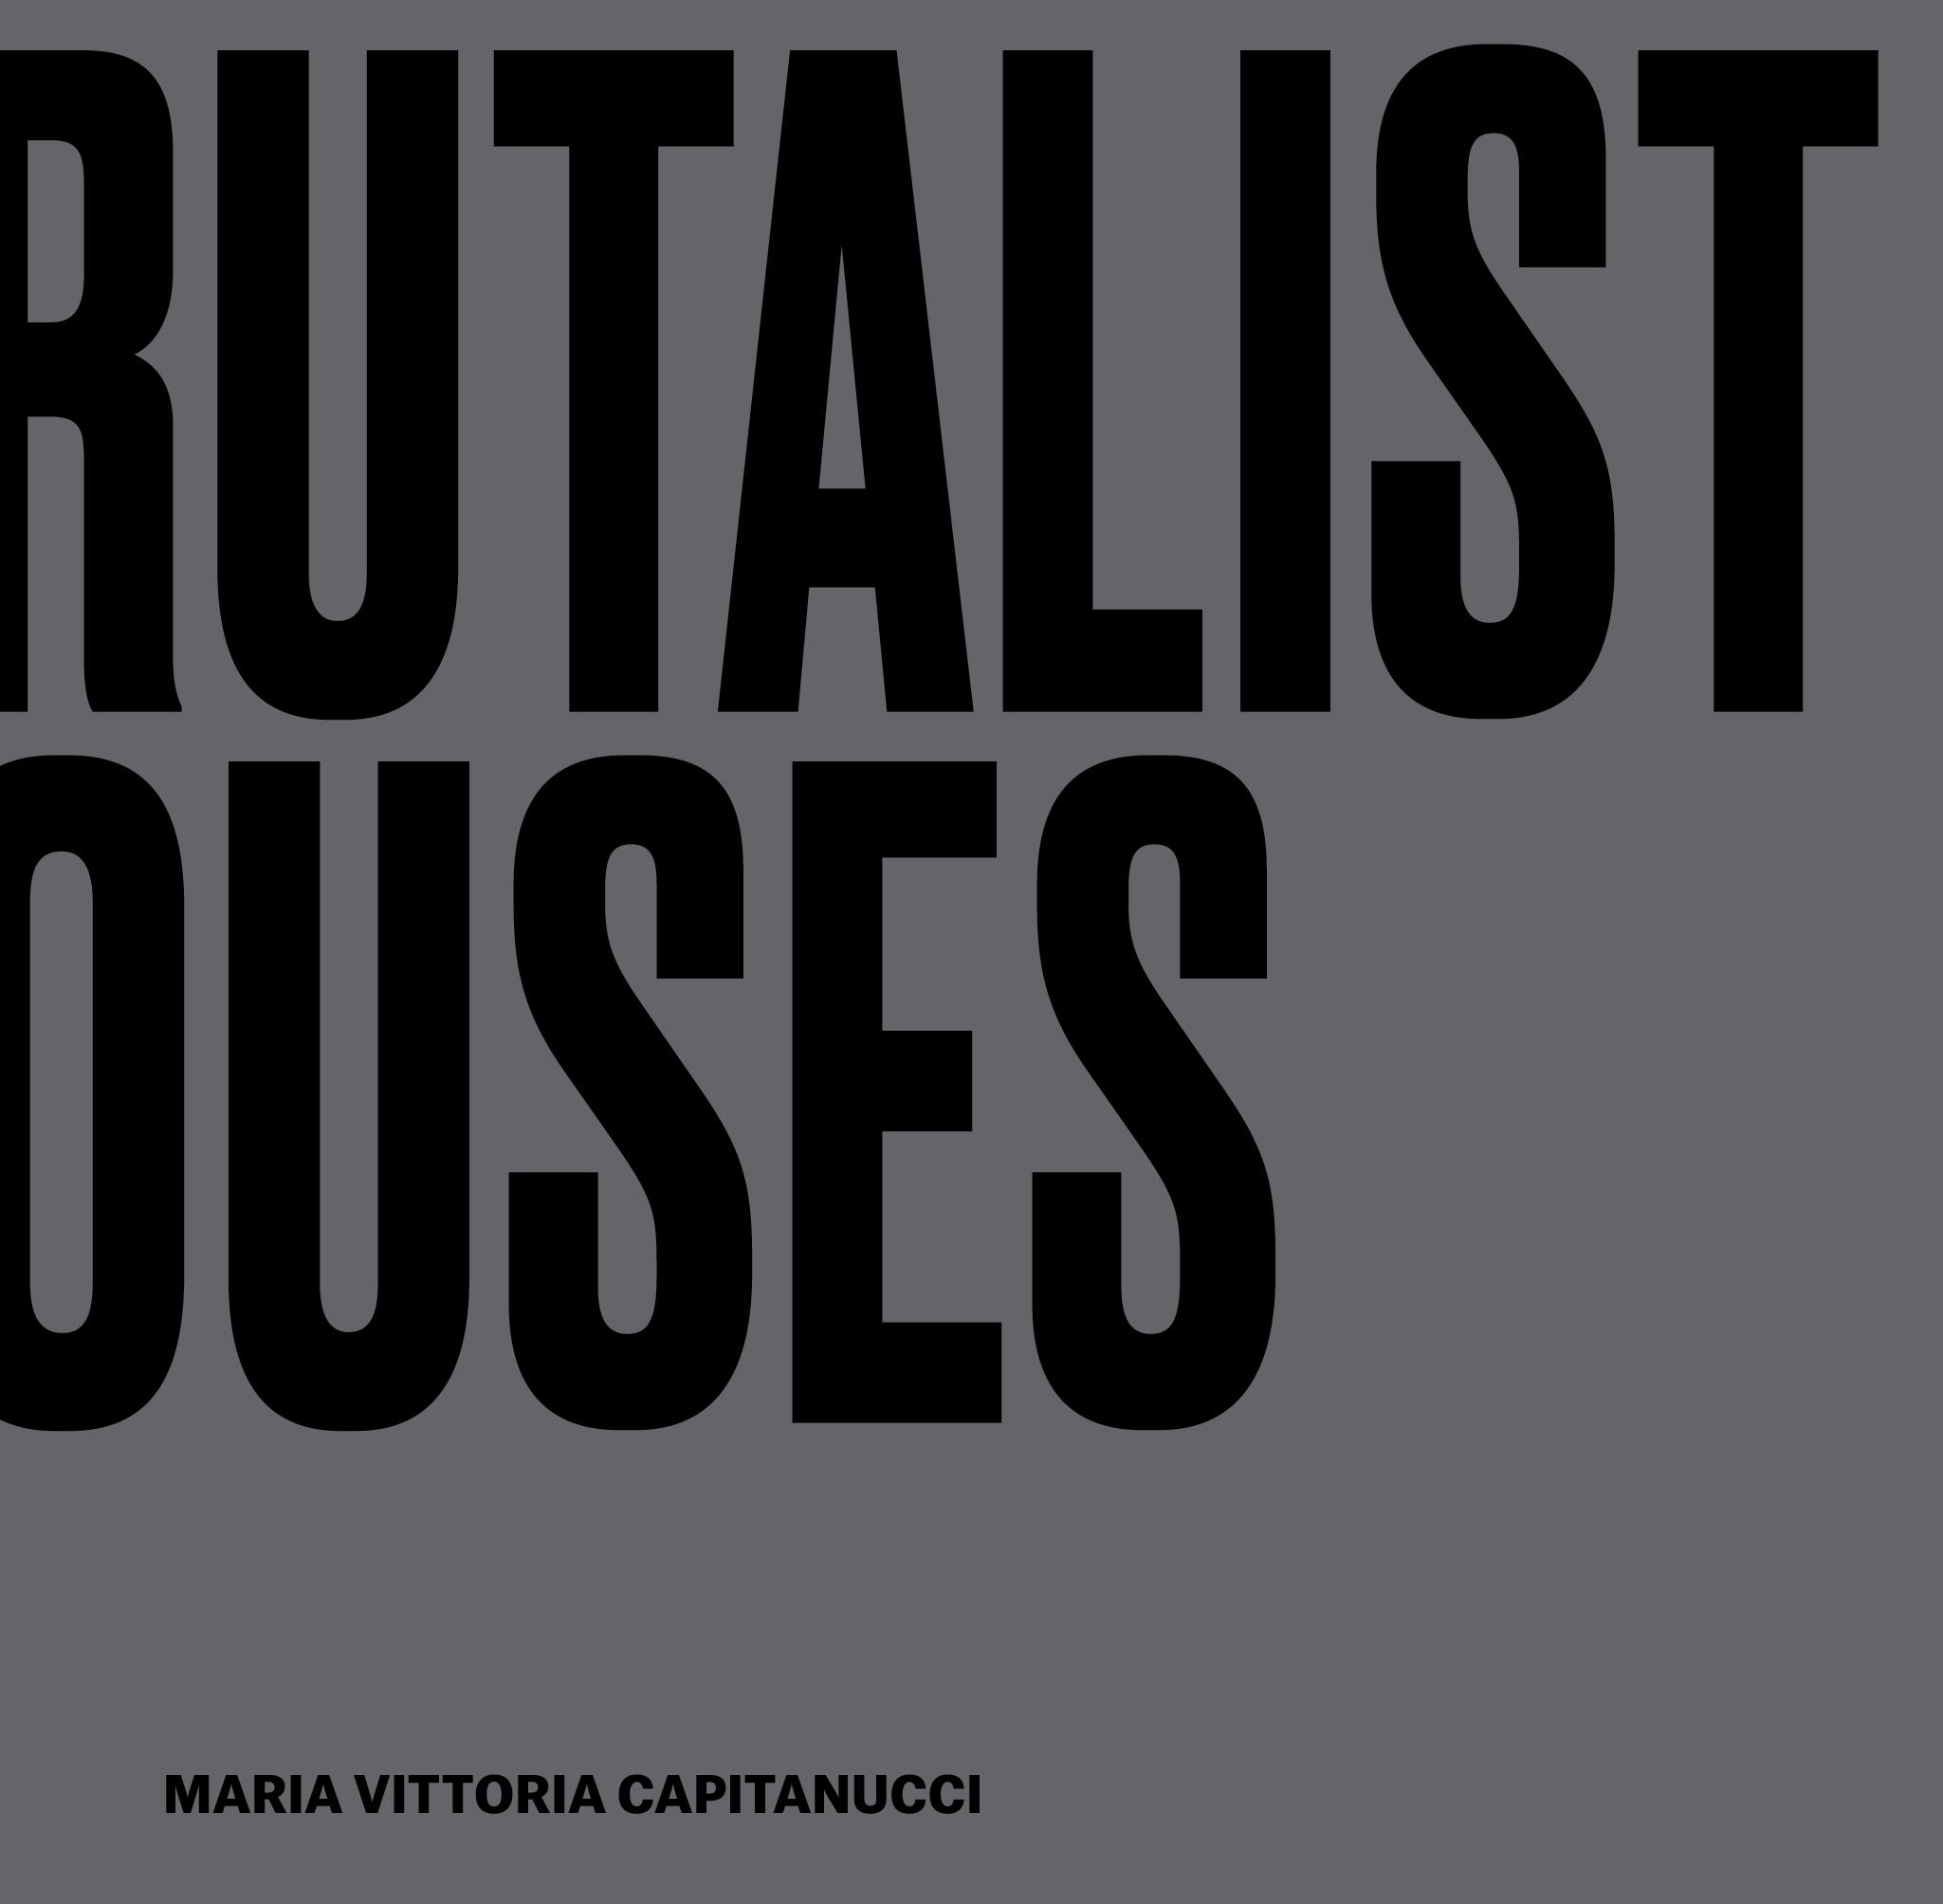 Maria Vittoria Capitanucci. Brutalist Houses, 24 ORE Cultura (copertina)